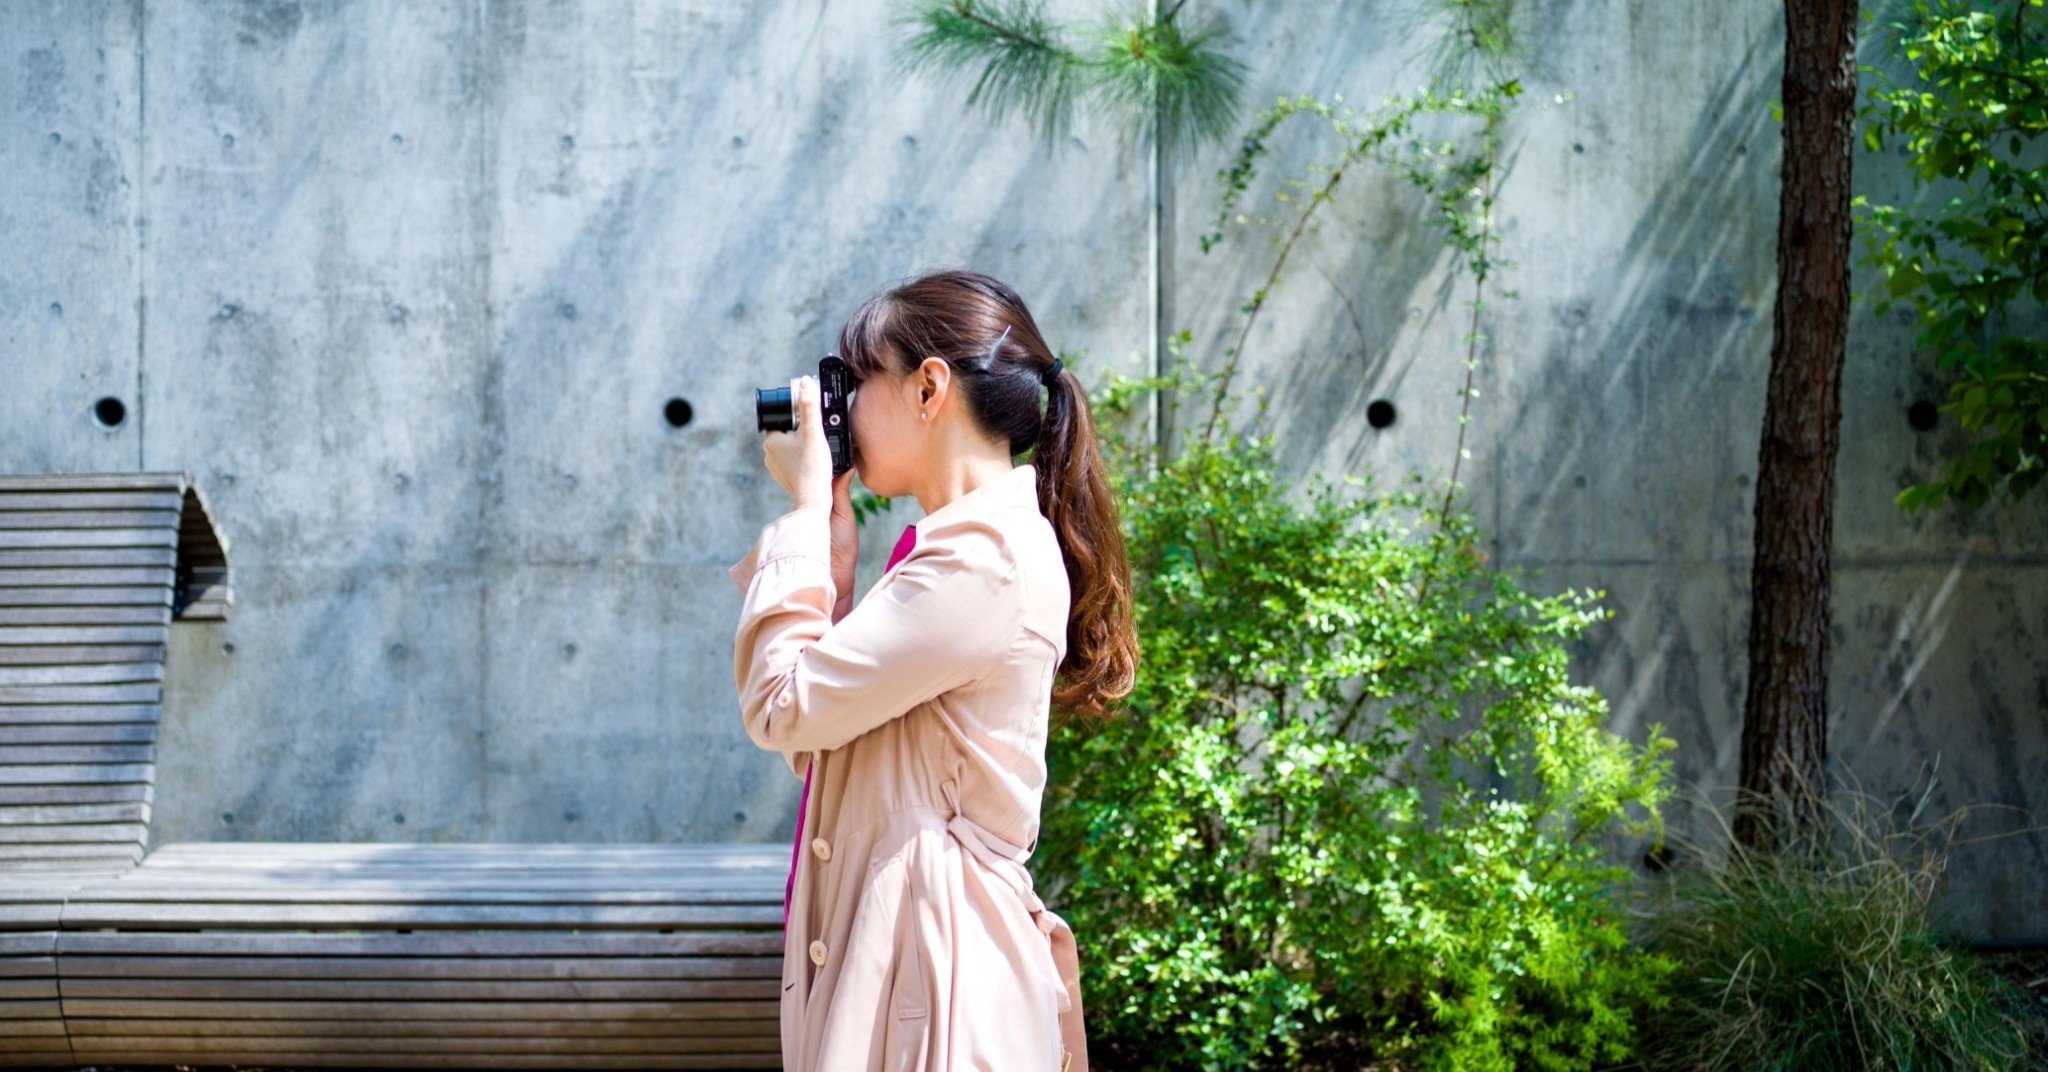 カメラ女子必見 ライカの入門機 Leica D Lux7 作例レビューその 東京 渋谷 旅するフォトグラファー スナップガール Note